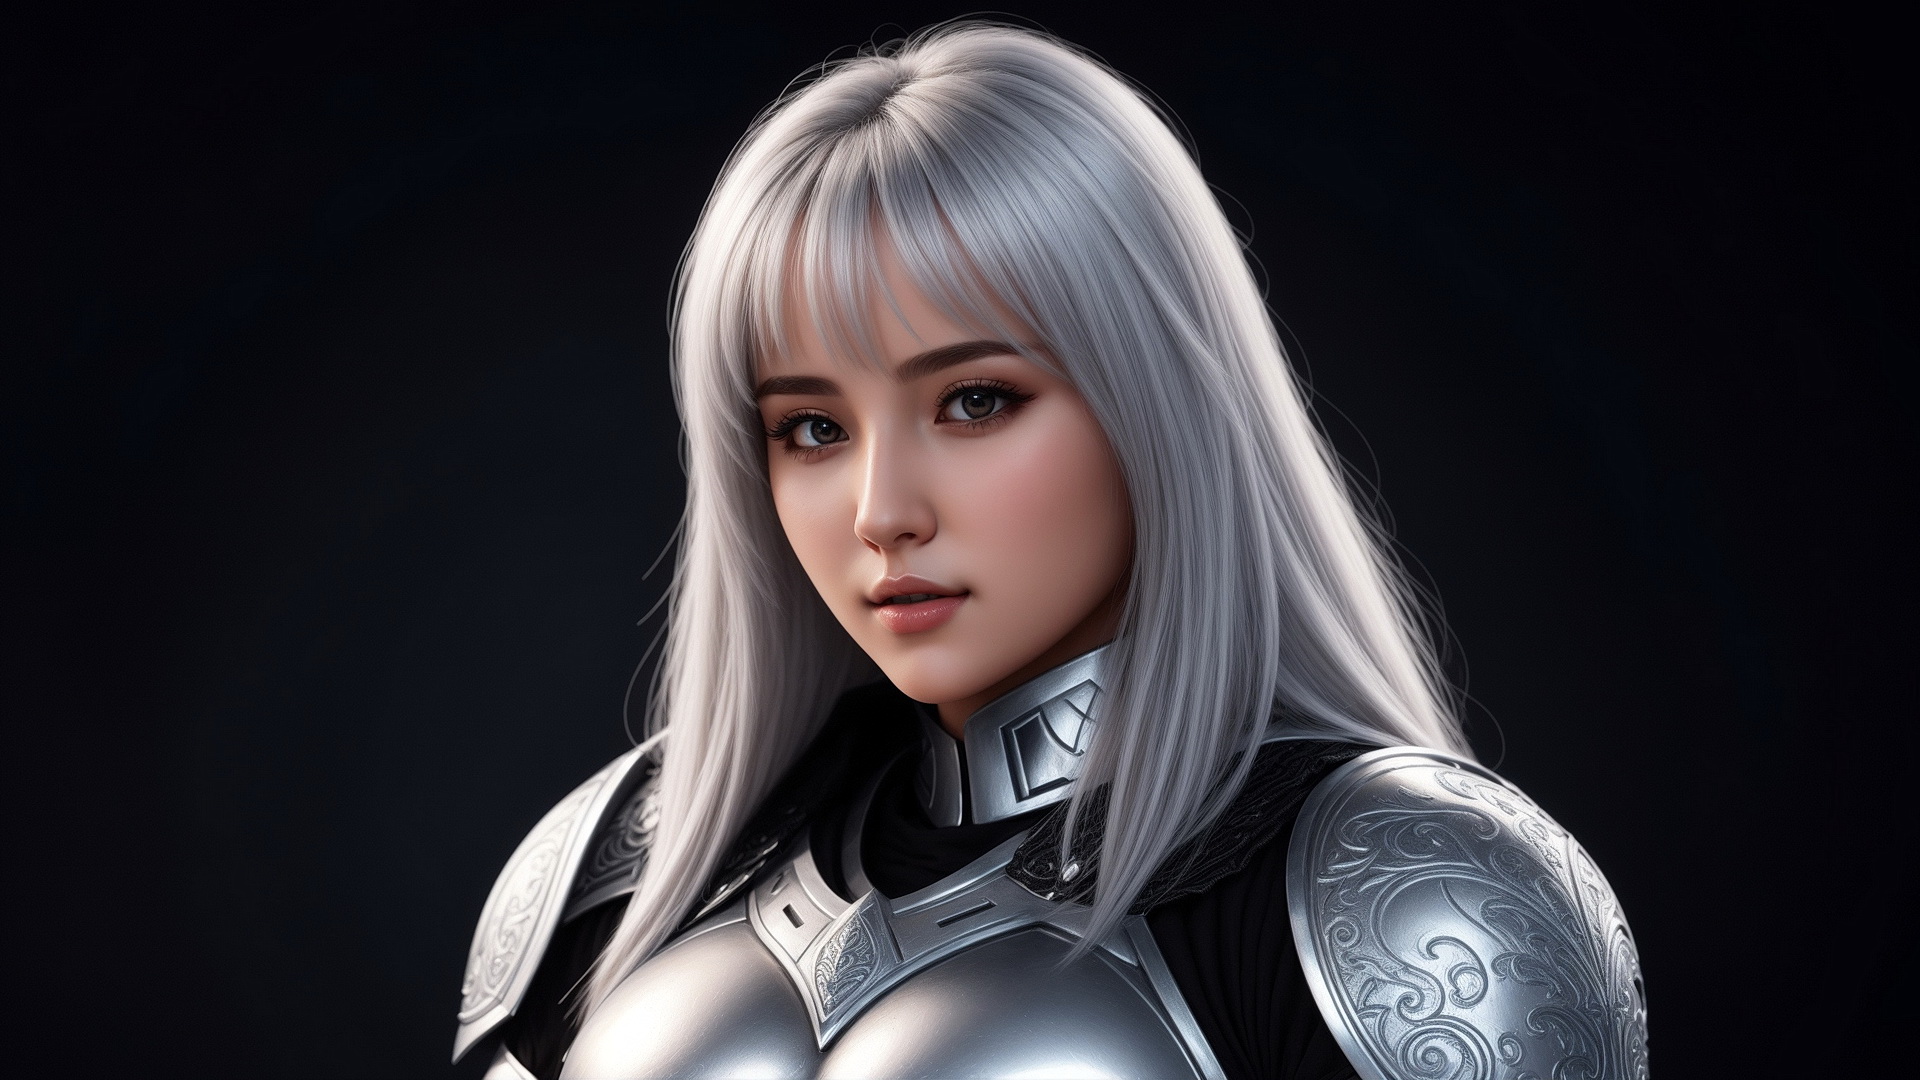 Бесплатное фото Портрет девушки рыцаря с белыми волосами на темном фоне